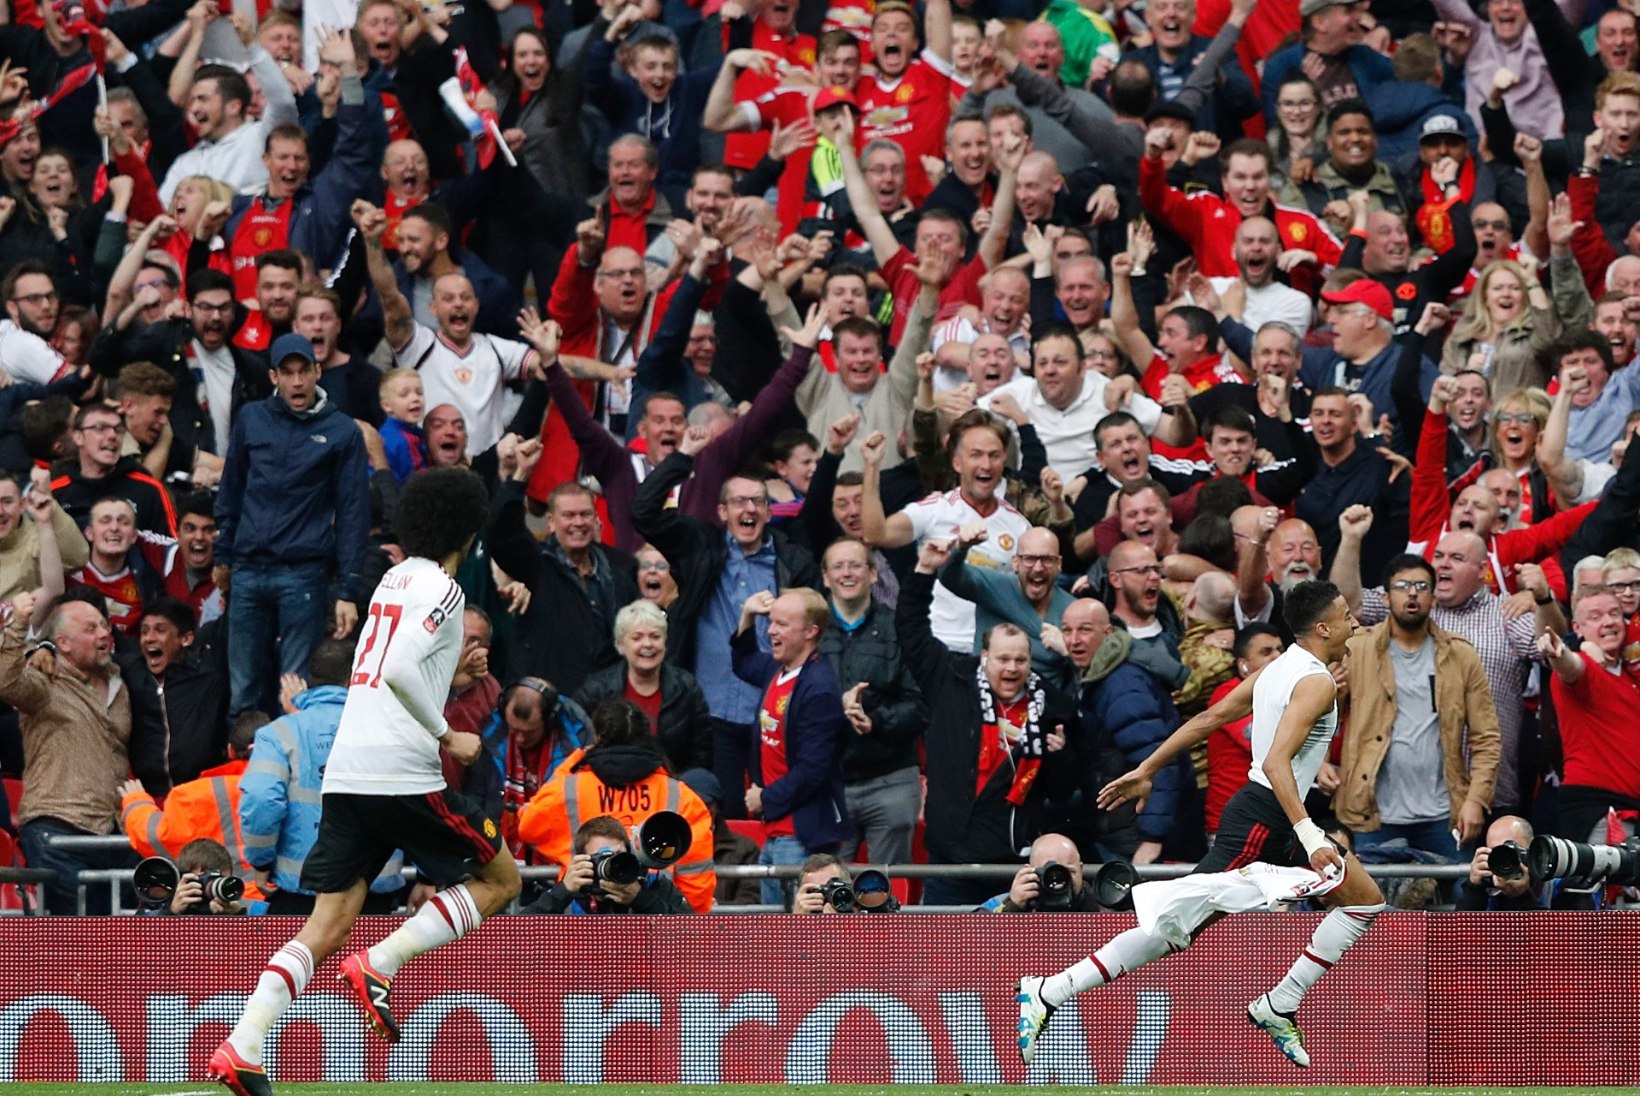 FOTOD | Manchesteri võidupidu: Van Gaal sai lõpuks tiitli